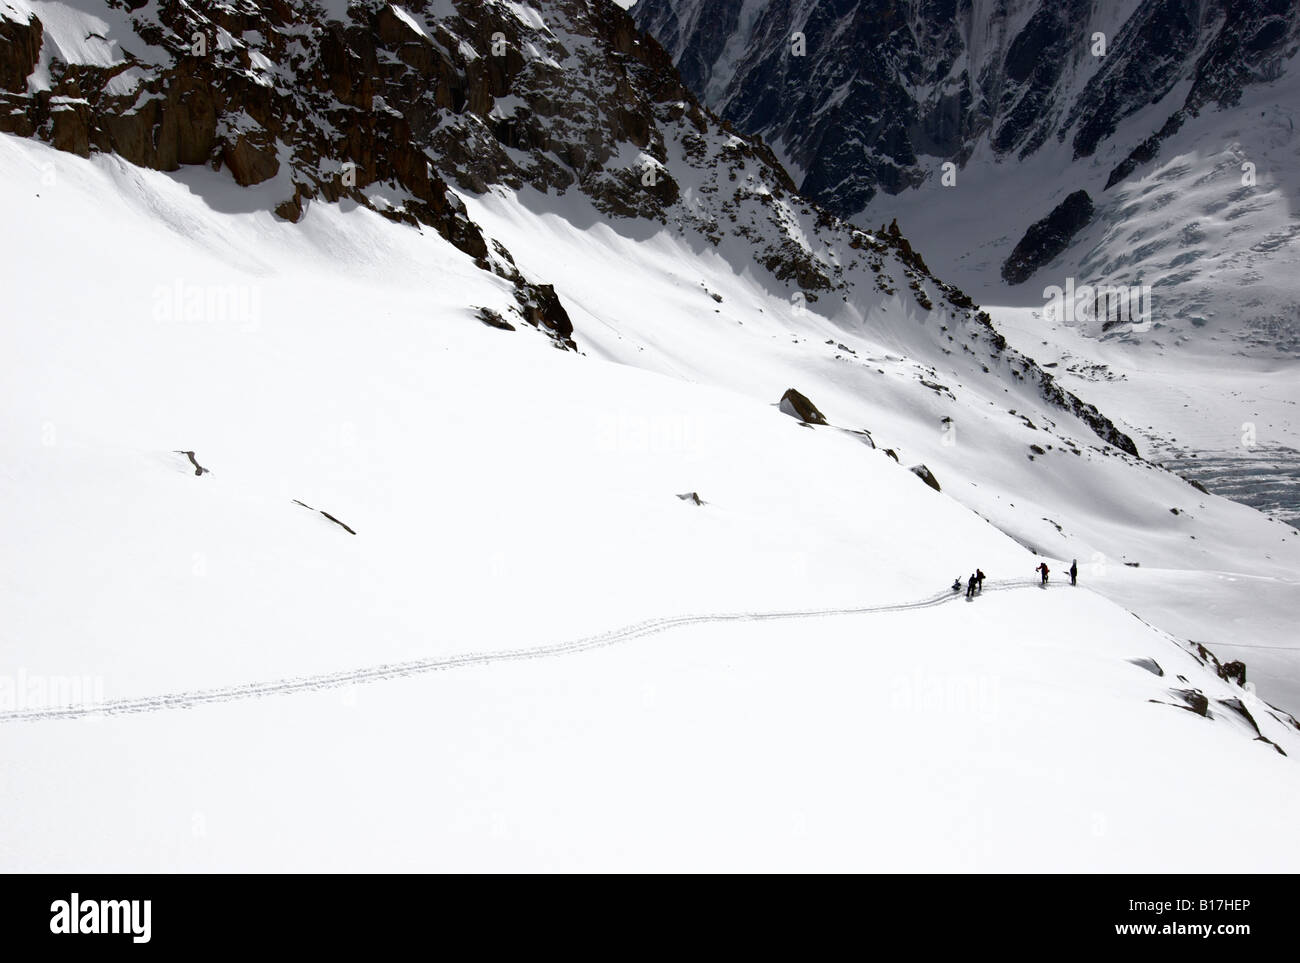 Ski de randonnée s'arrêtant pour se reposer pendant l'ascension du Glacier d'Argentière en direction du Col du Passon, vallée de Chamonix, France Banque D'Images